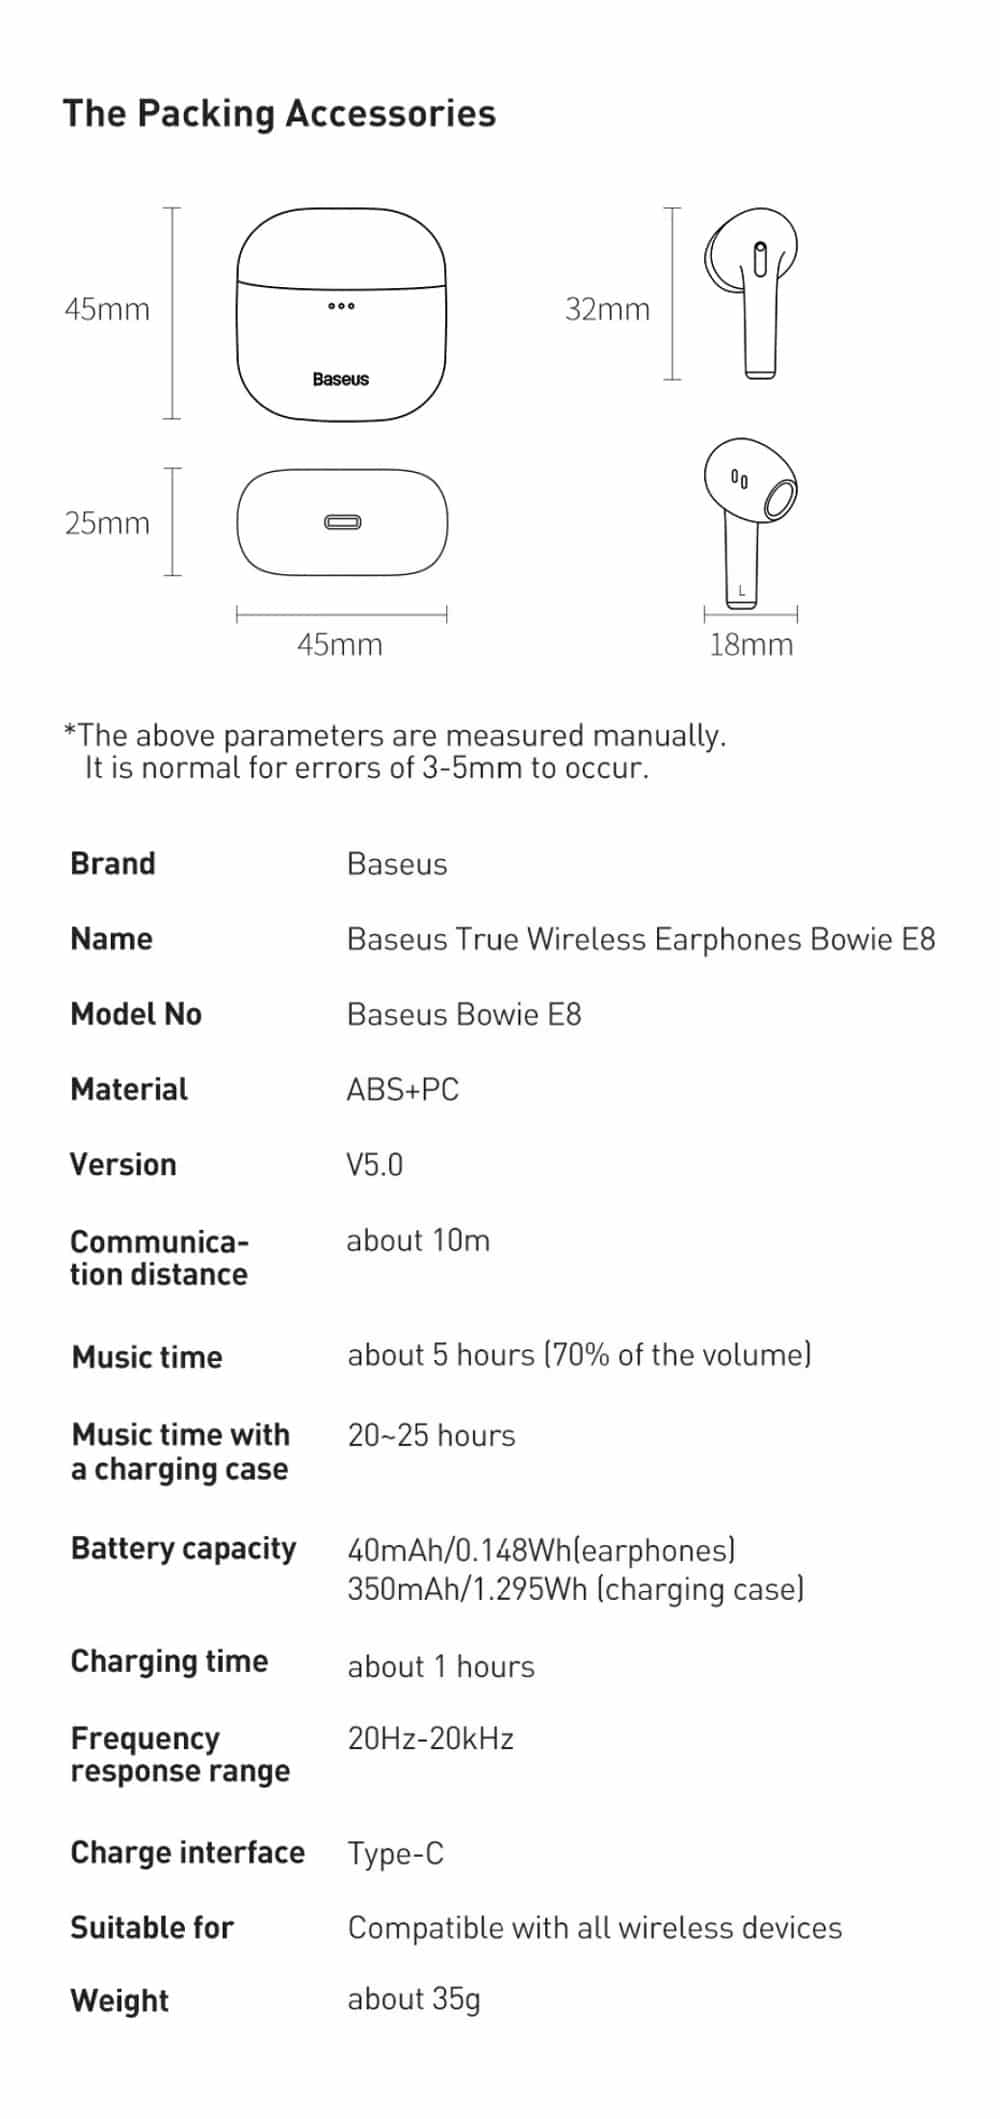 Baseus Bowie E8 True Wireless Earphones 16